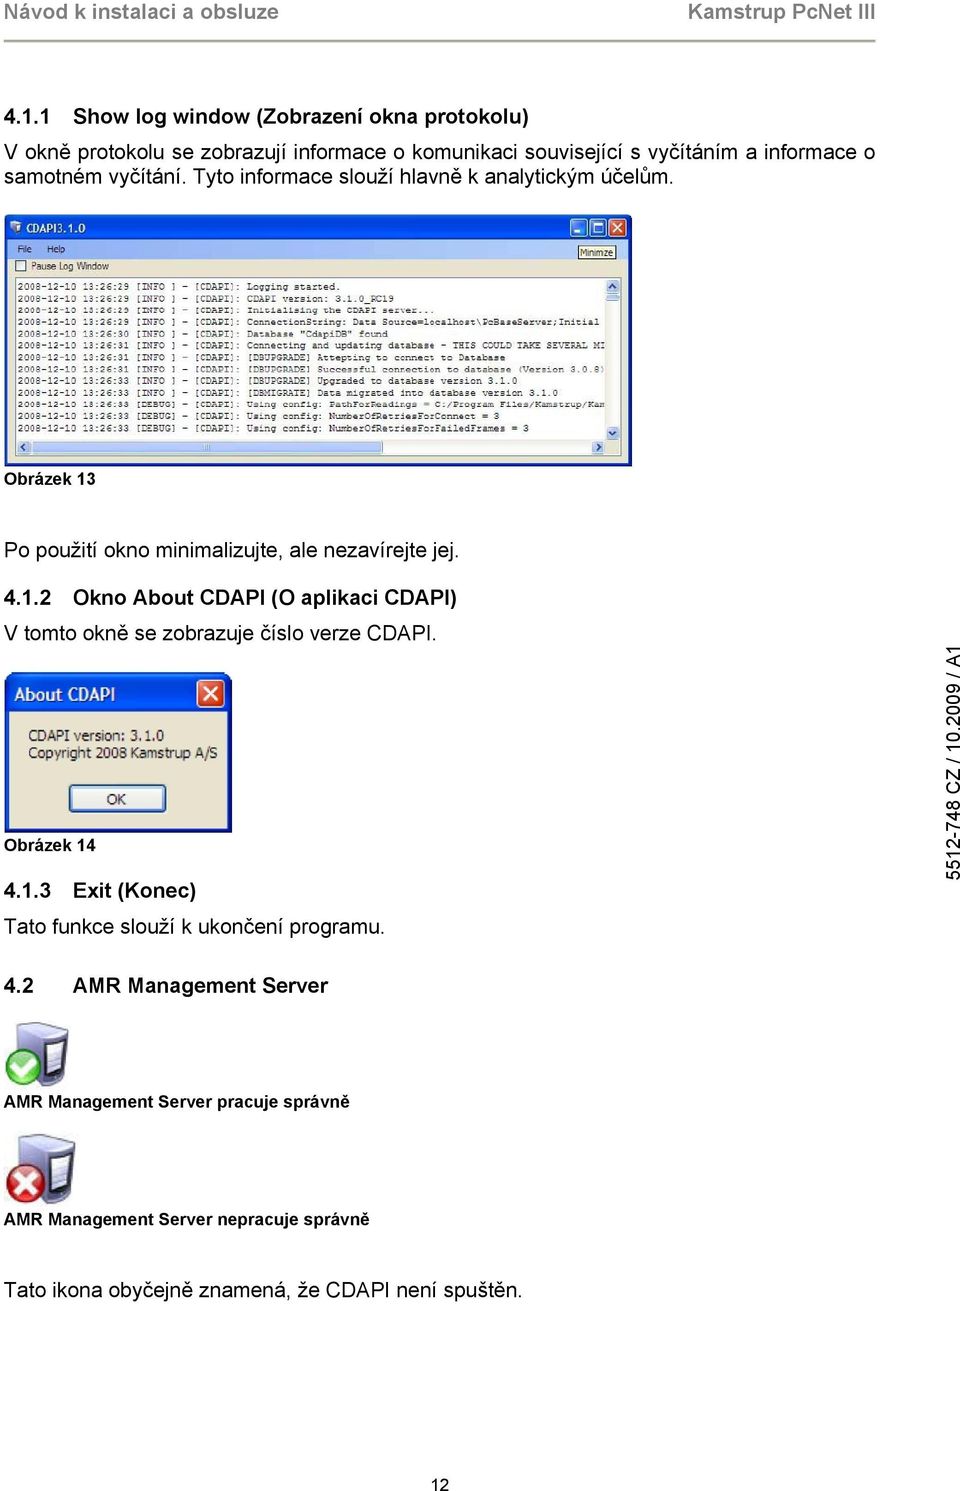 Po použití okno minimalizujte, ale nezavírejte jej. 4.1.2 Okno About CDAPI (O aplikaci CDAPI) V tomto okně se zobrazuje číslo verze CDAPI.